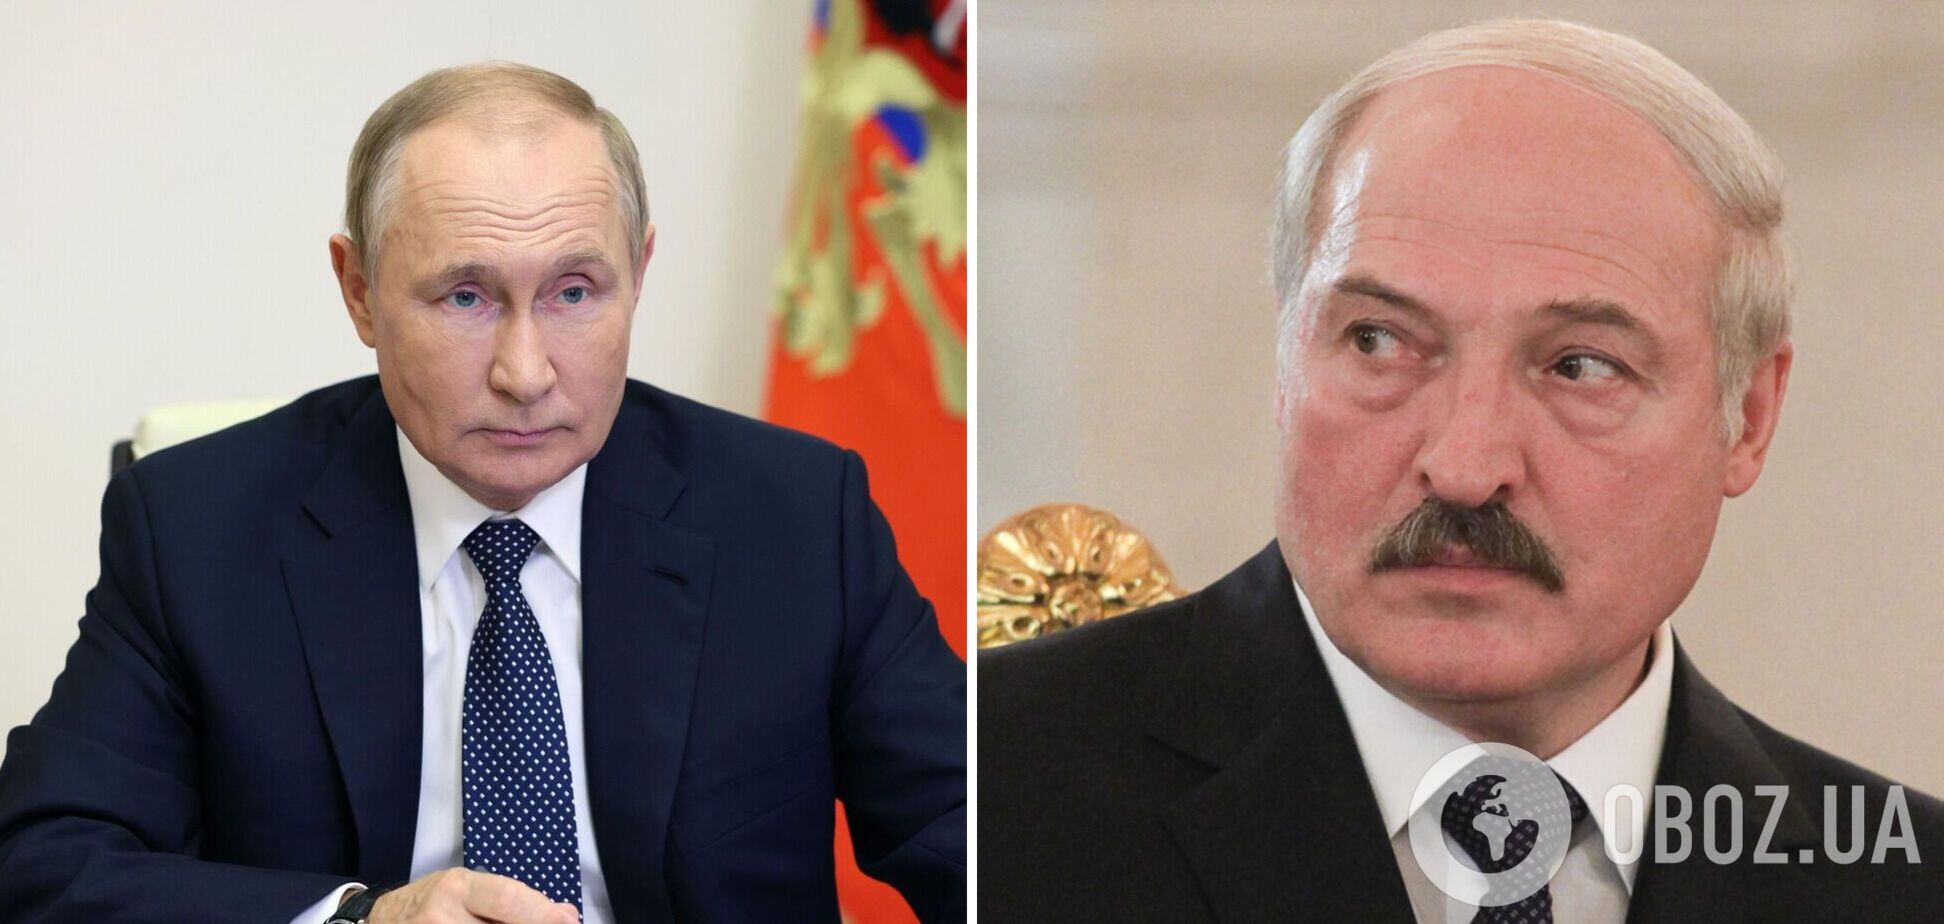 Лукашенко искал контакты с Западом, над ним нависла угроза – СМИ